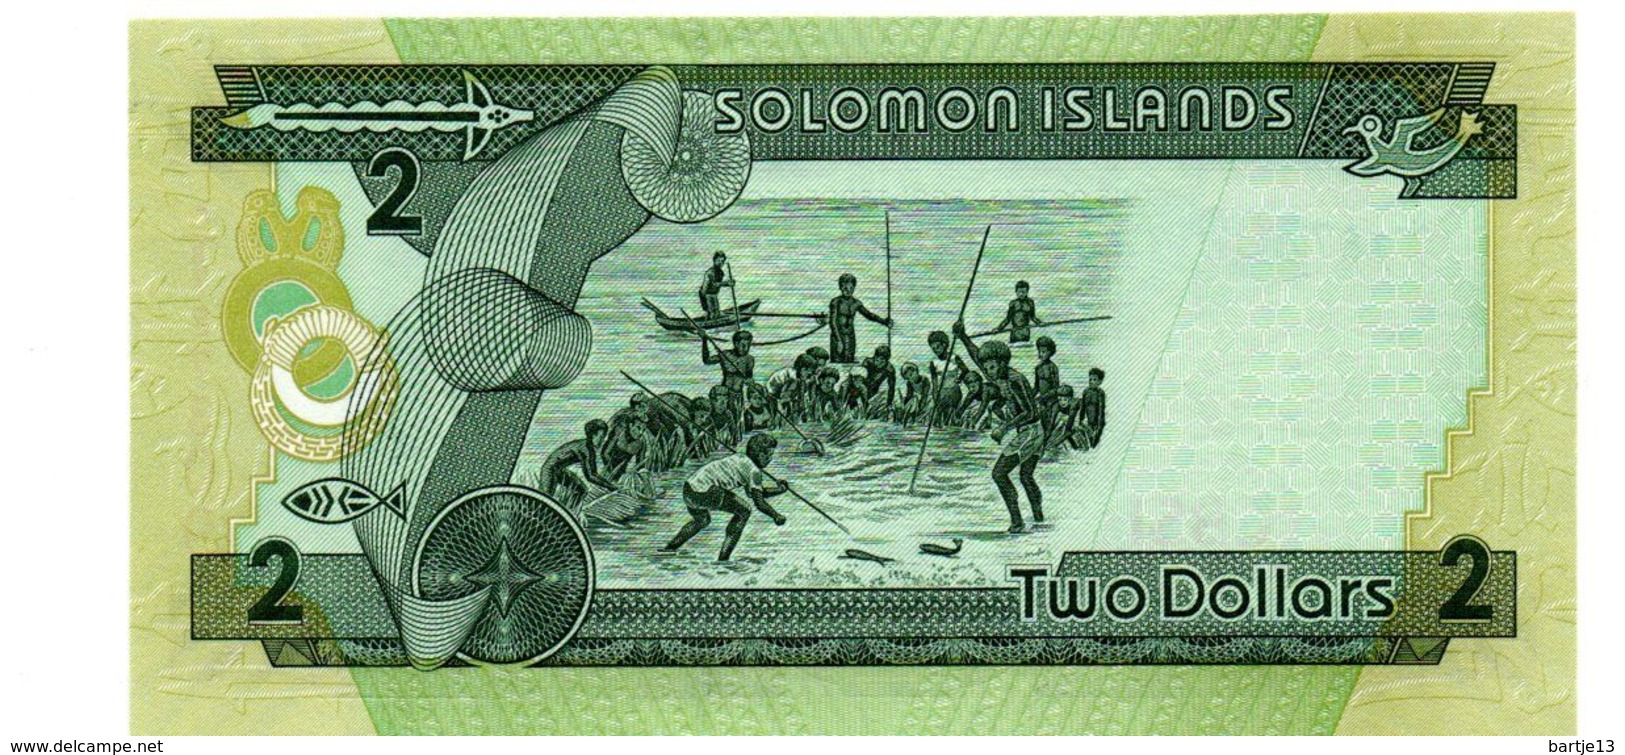 SOLOMON ISLANDS 2 DOLLARS PICK 18 UNCIRCULATED POLYMEER - Salomonseilanden